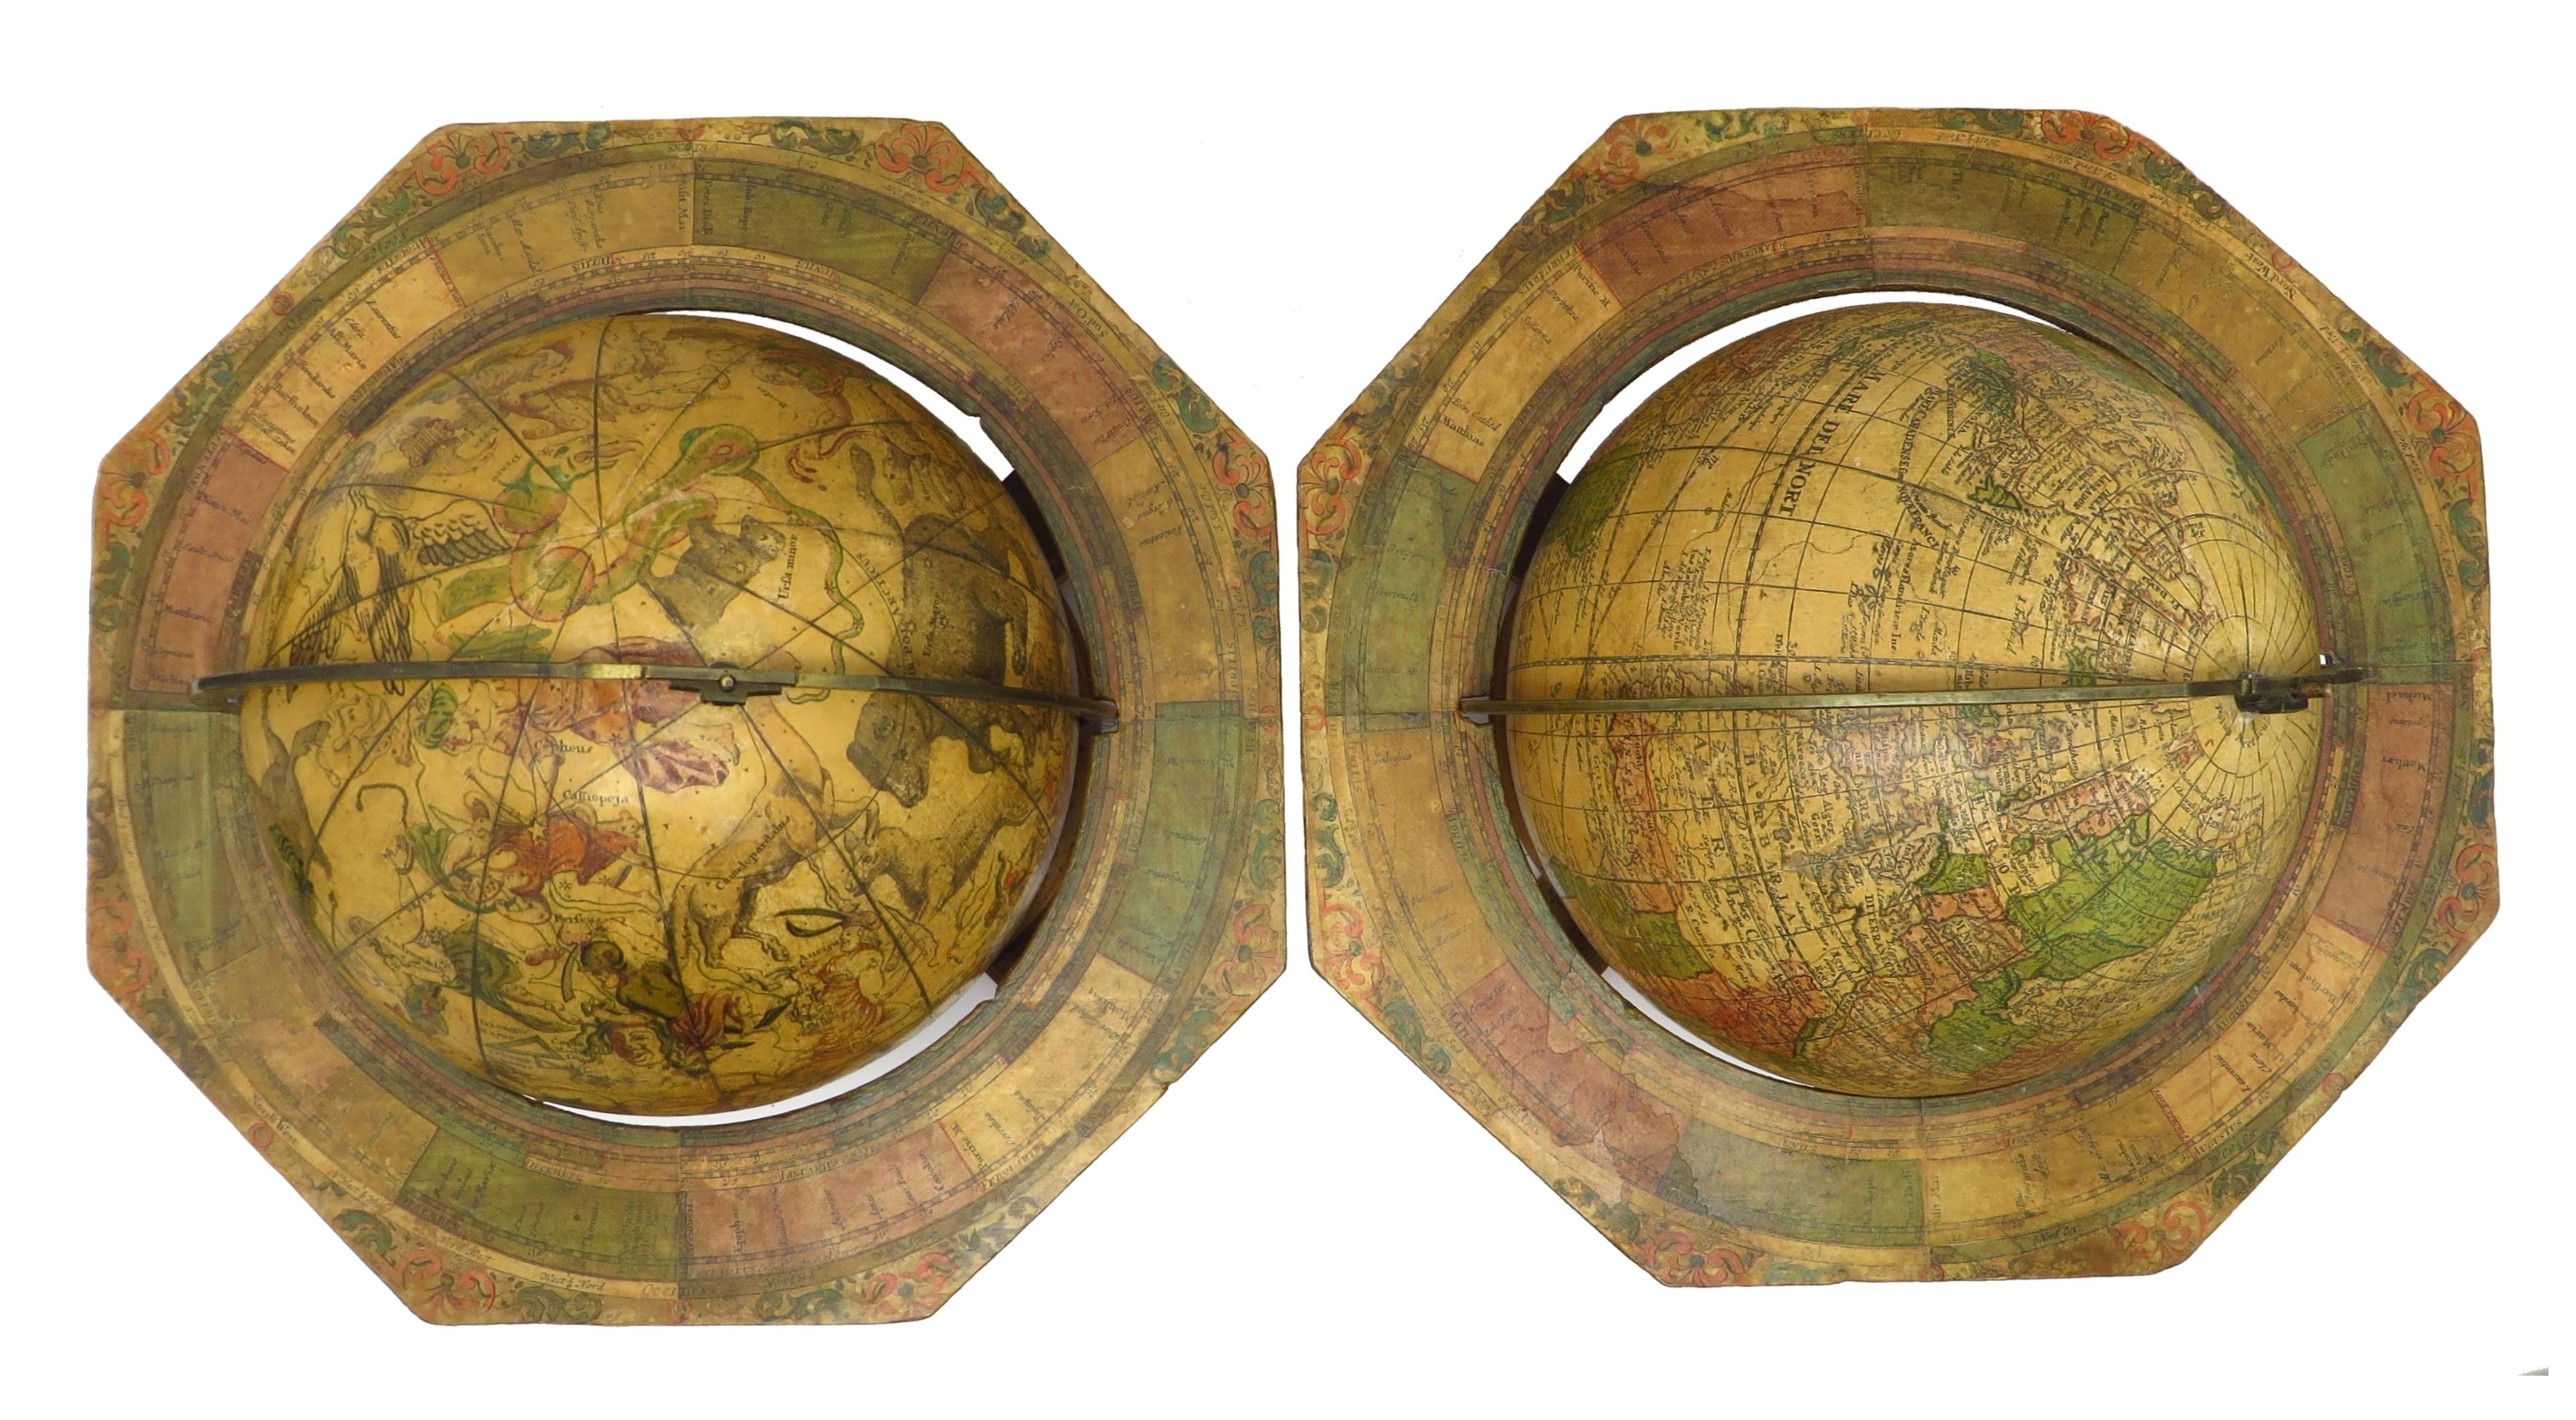 Cette paire de globes, datée de 1730, est originale et en bon état.

Titre :
Globus terrestris novus LoCa Terrae insigniora sec. praestant Astron. et Geogr. observationes sistens opera Ioh. Gabr. A&M. M.P.P. concinne traditus à Ioh. Georg Puschnero